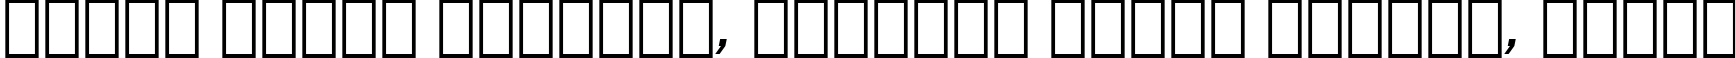 Пример написания шрифтом Serifa Italic BT текста на белорусском